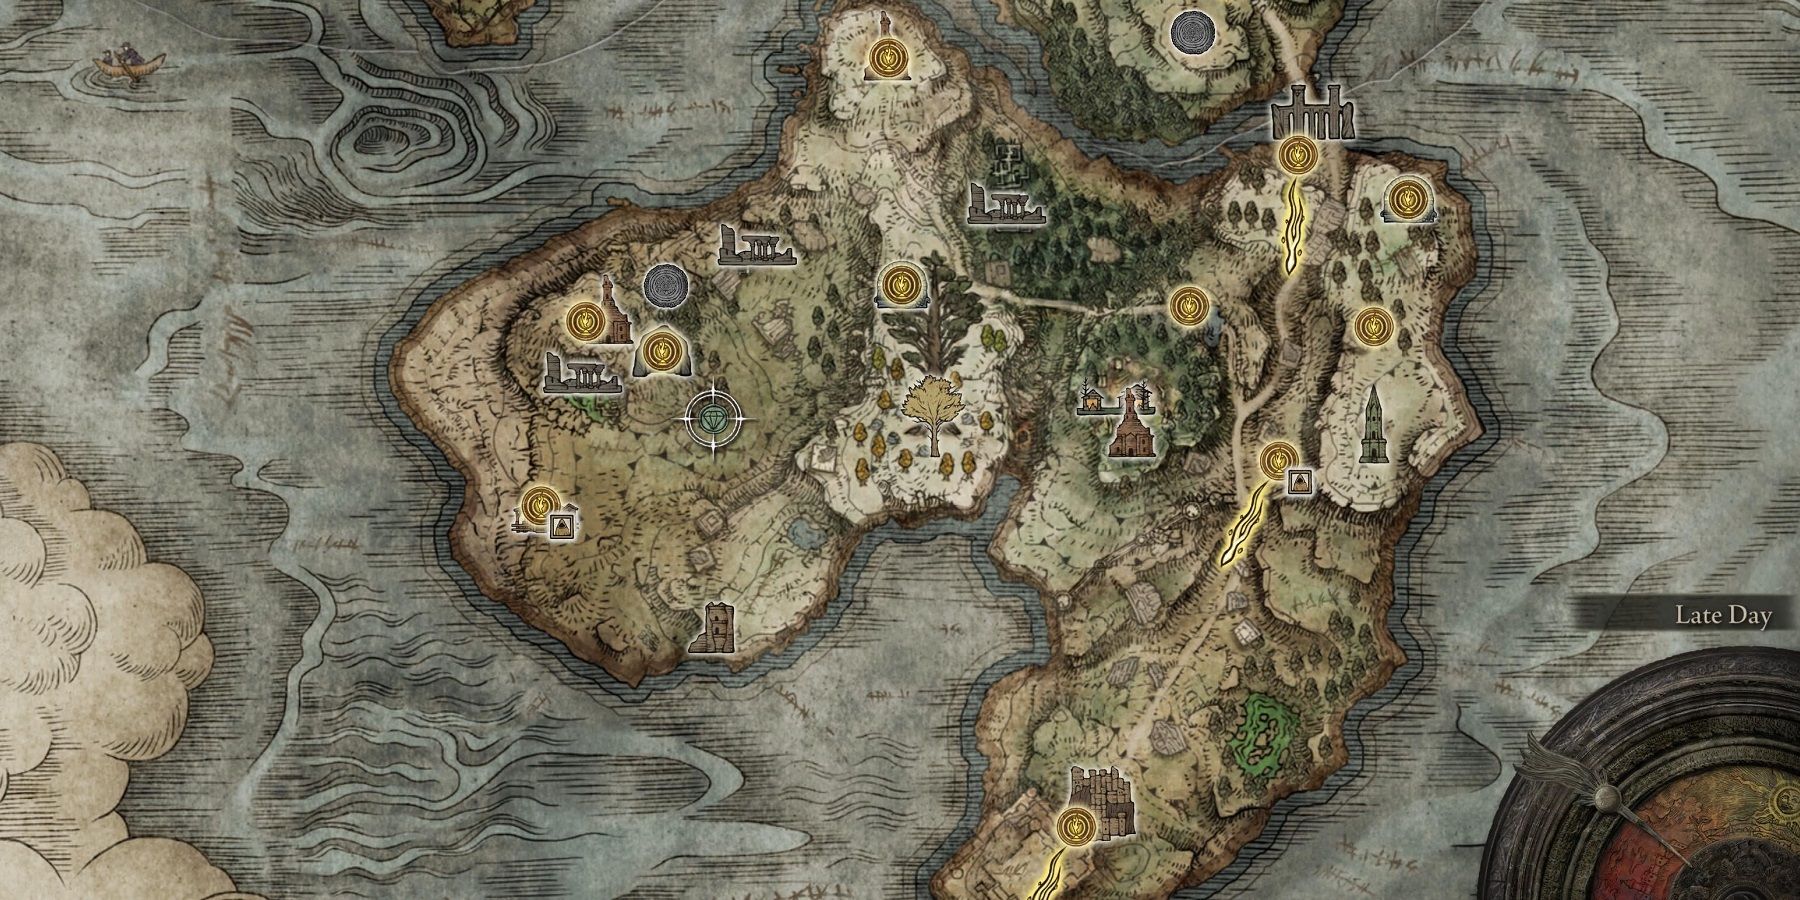 Elden Ring Weeping Peninsula map